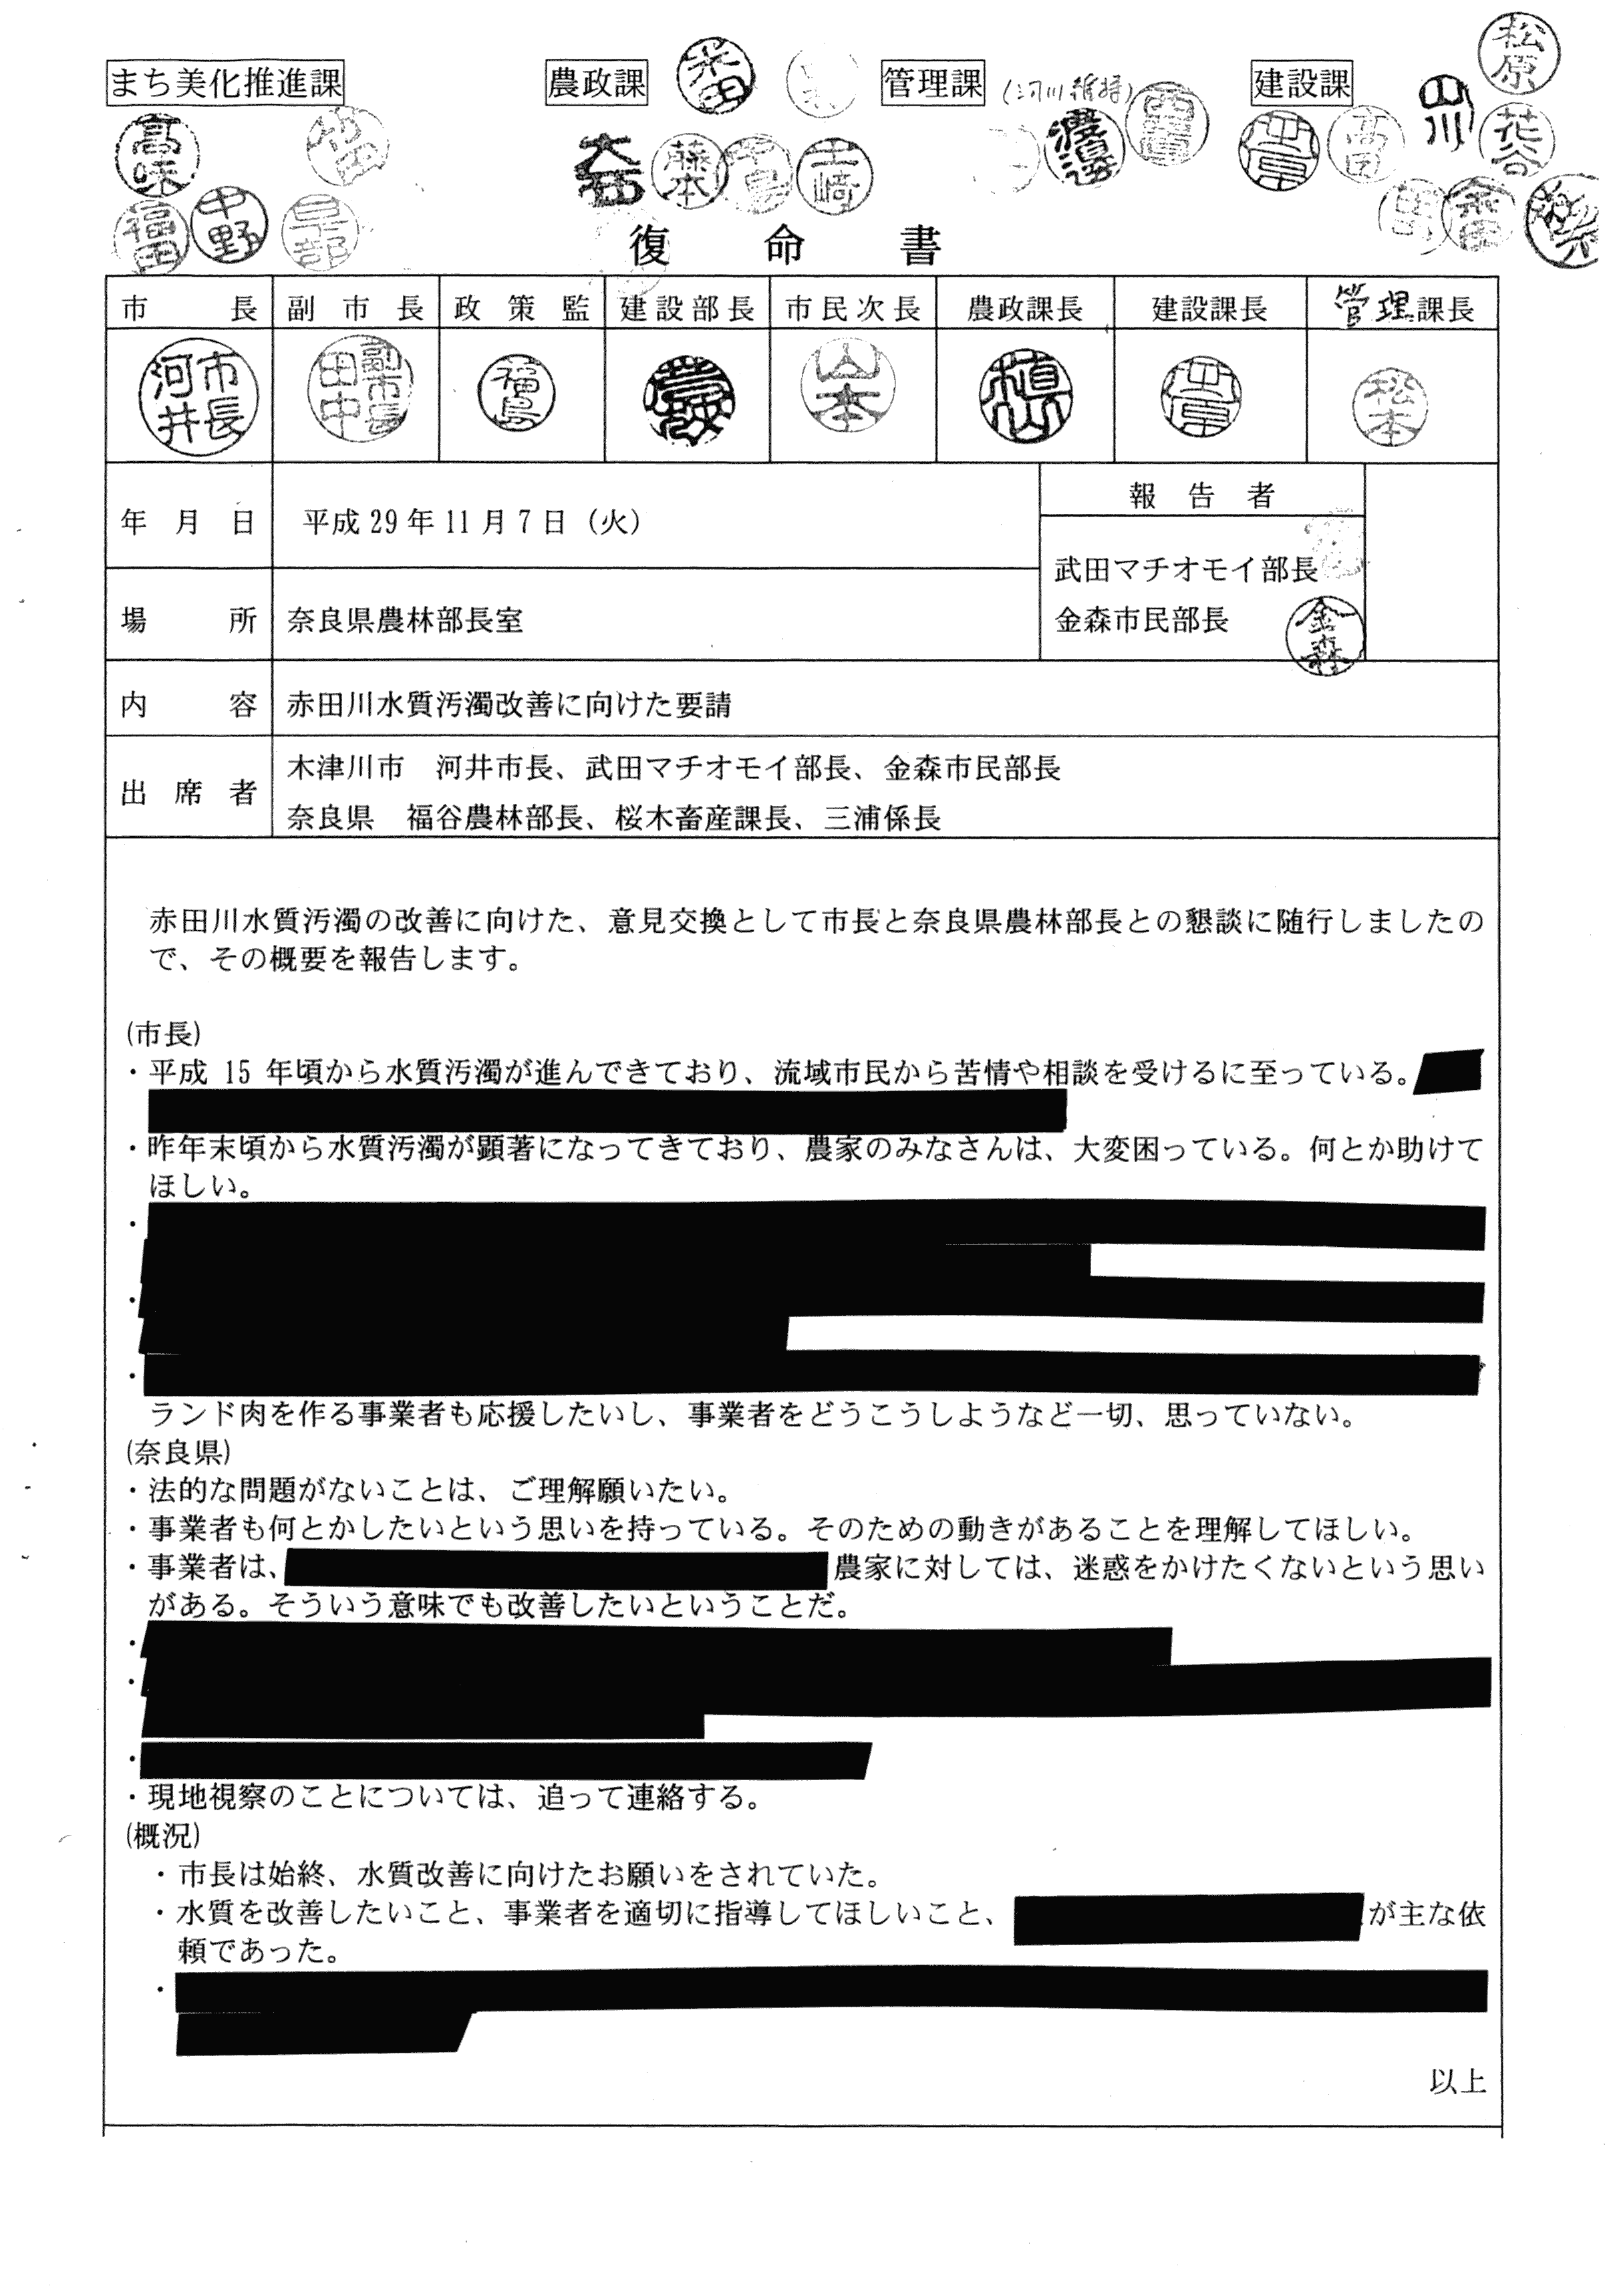 平成29年11月7日-赤田川水質汚濁改善に向けた要請-01